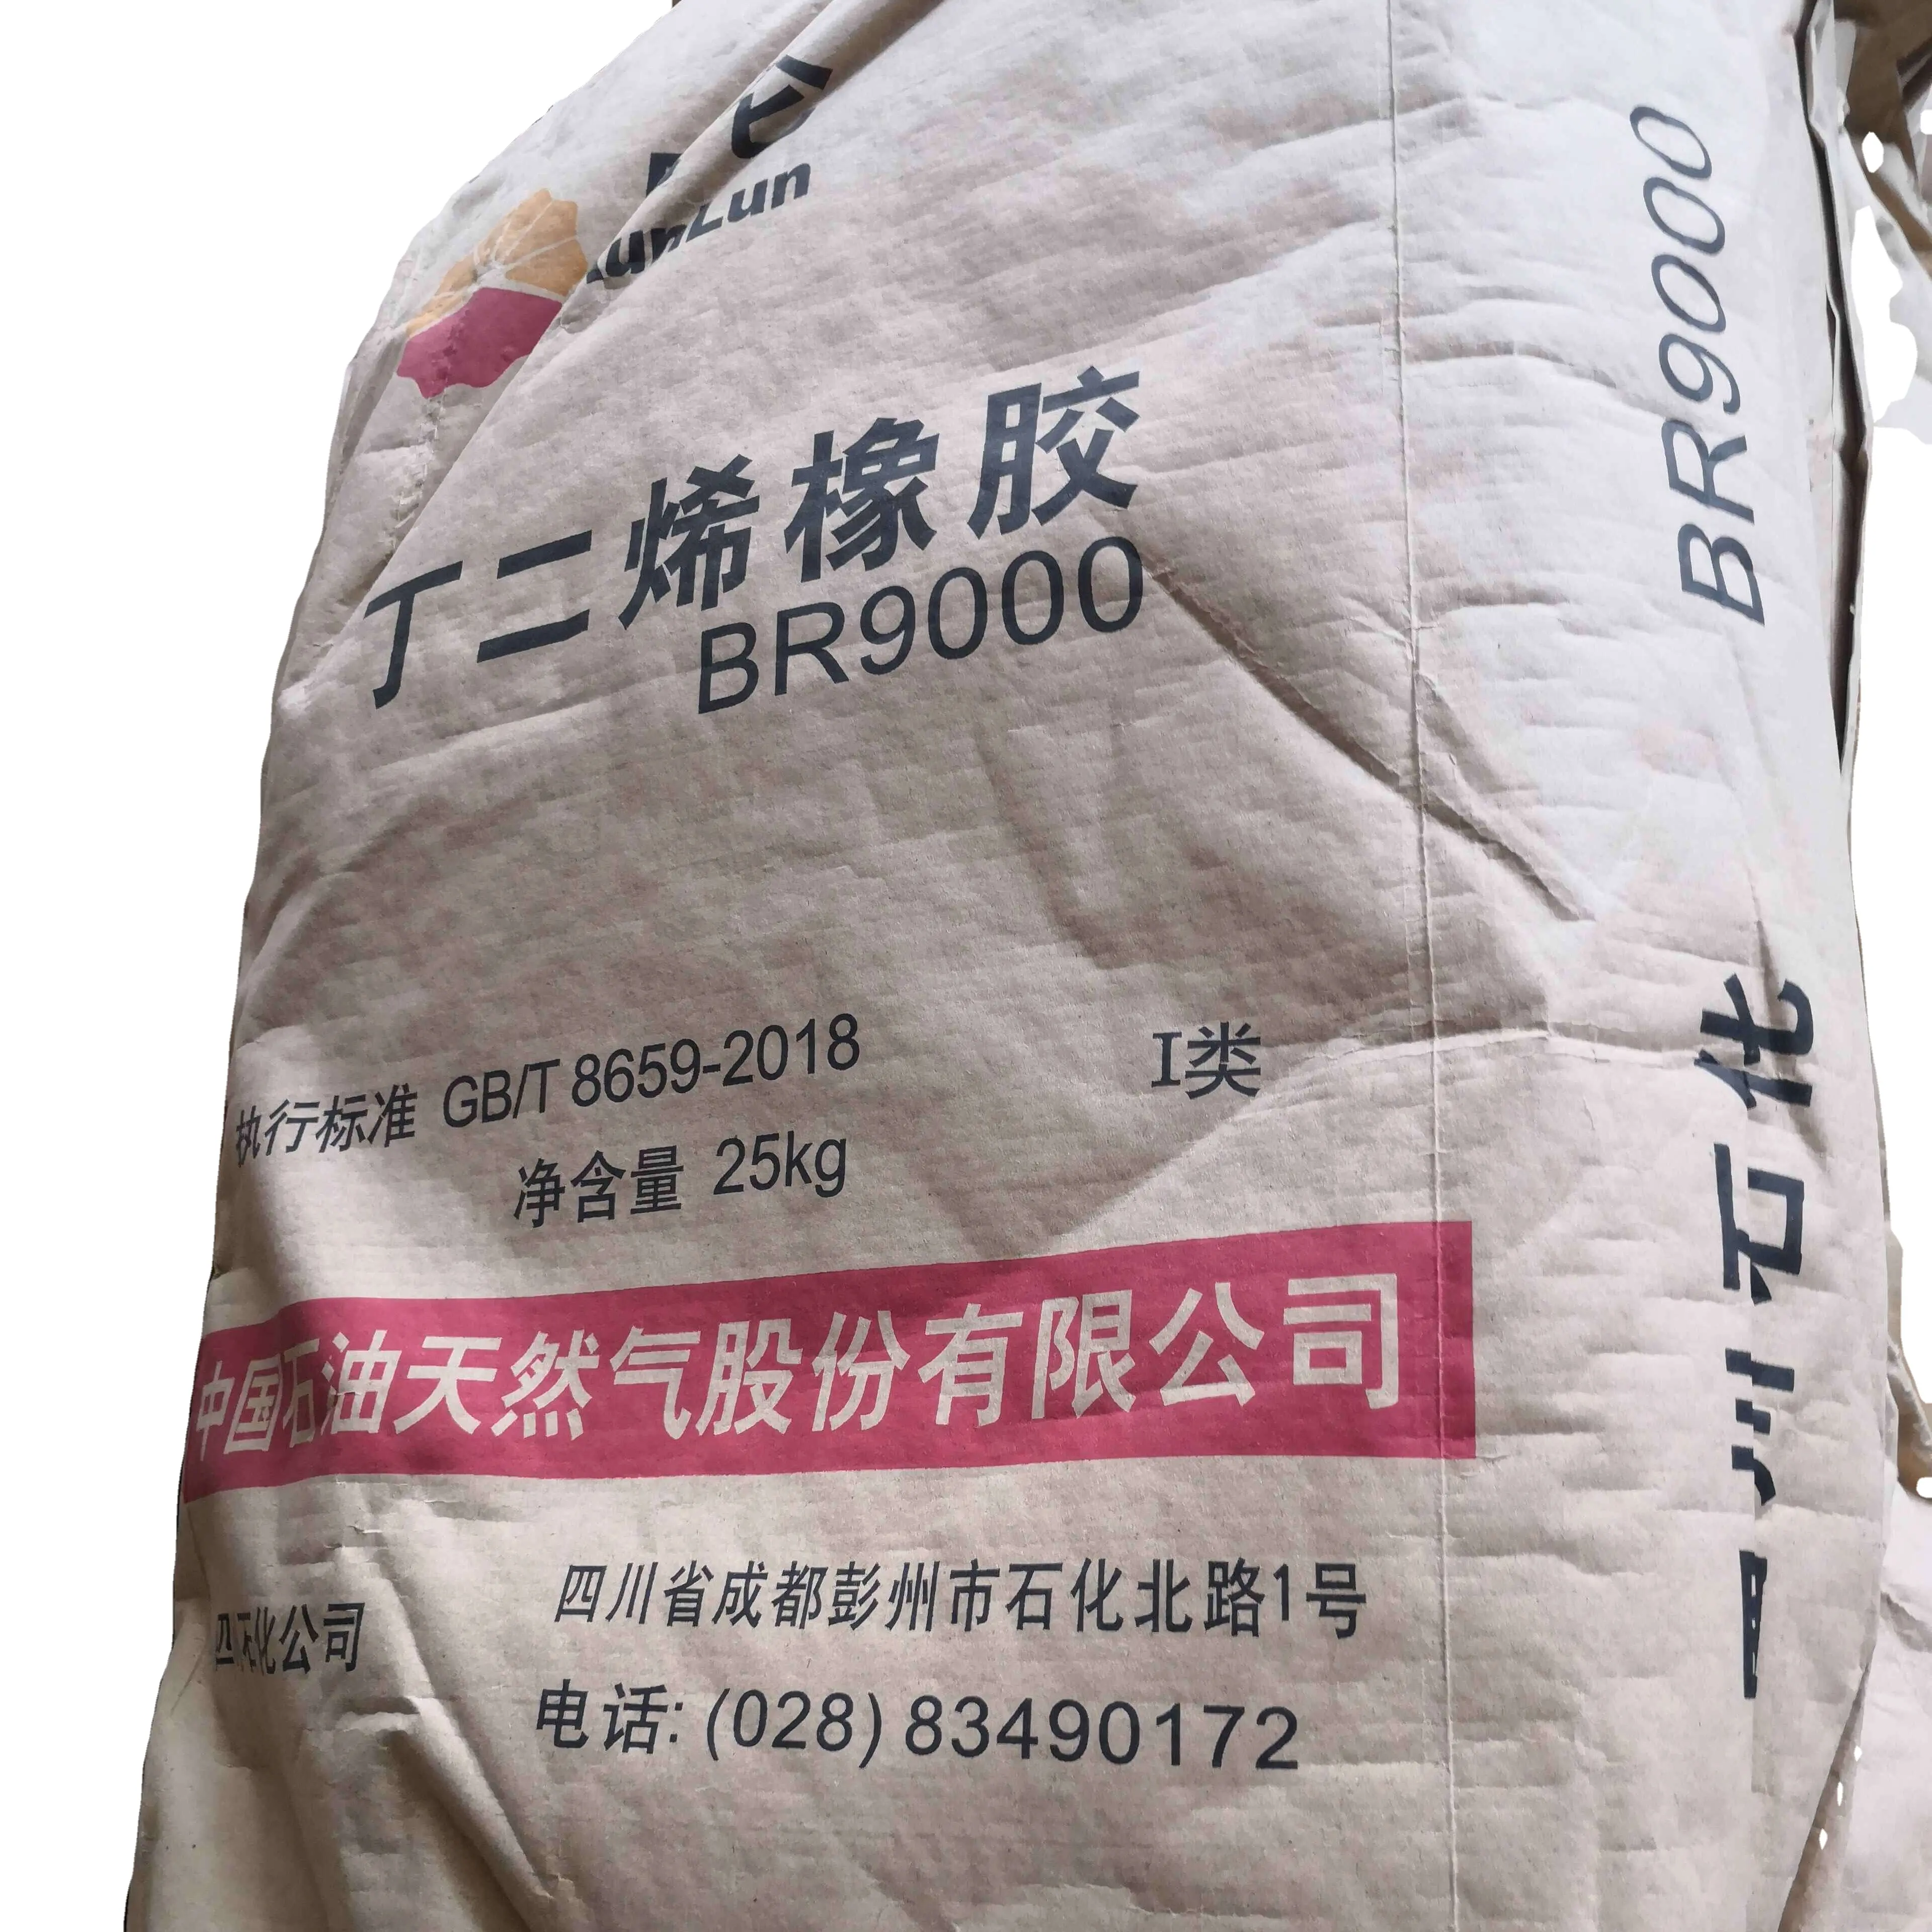 Caucho sintético de butadieno, marca Kunlun o sinotec, precio de fábrica de China, con paquete original SBR 9000 BR 1712, 9000